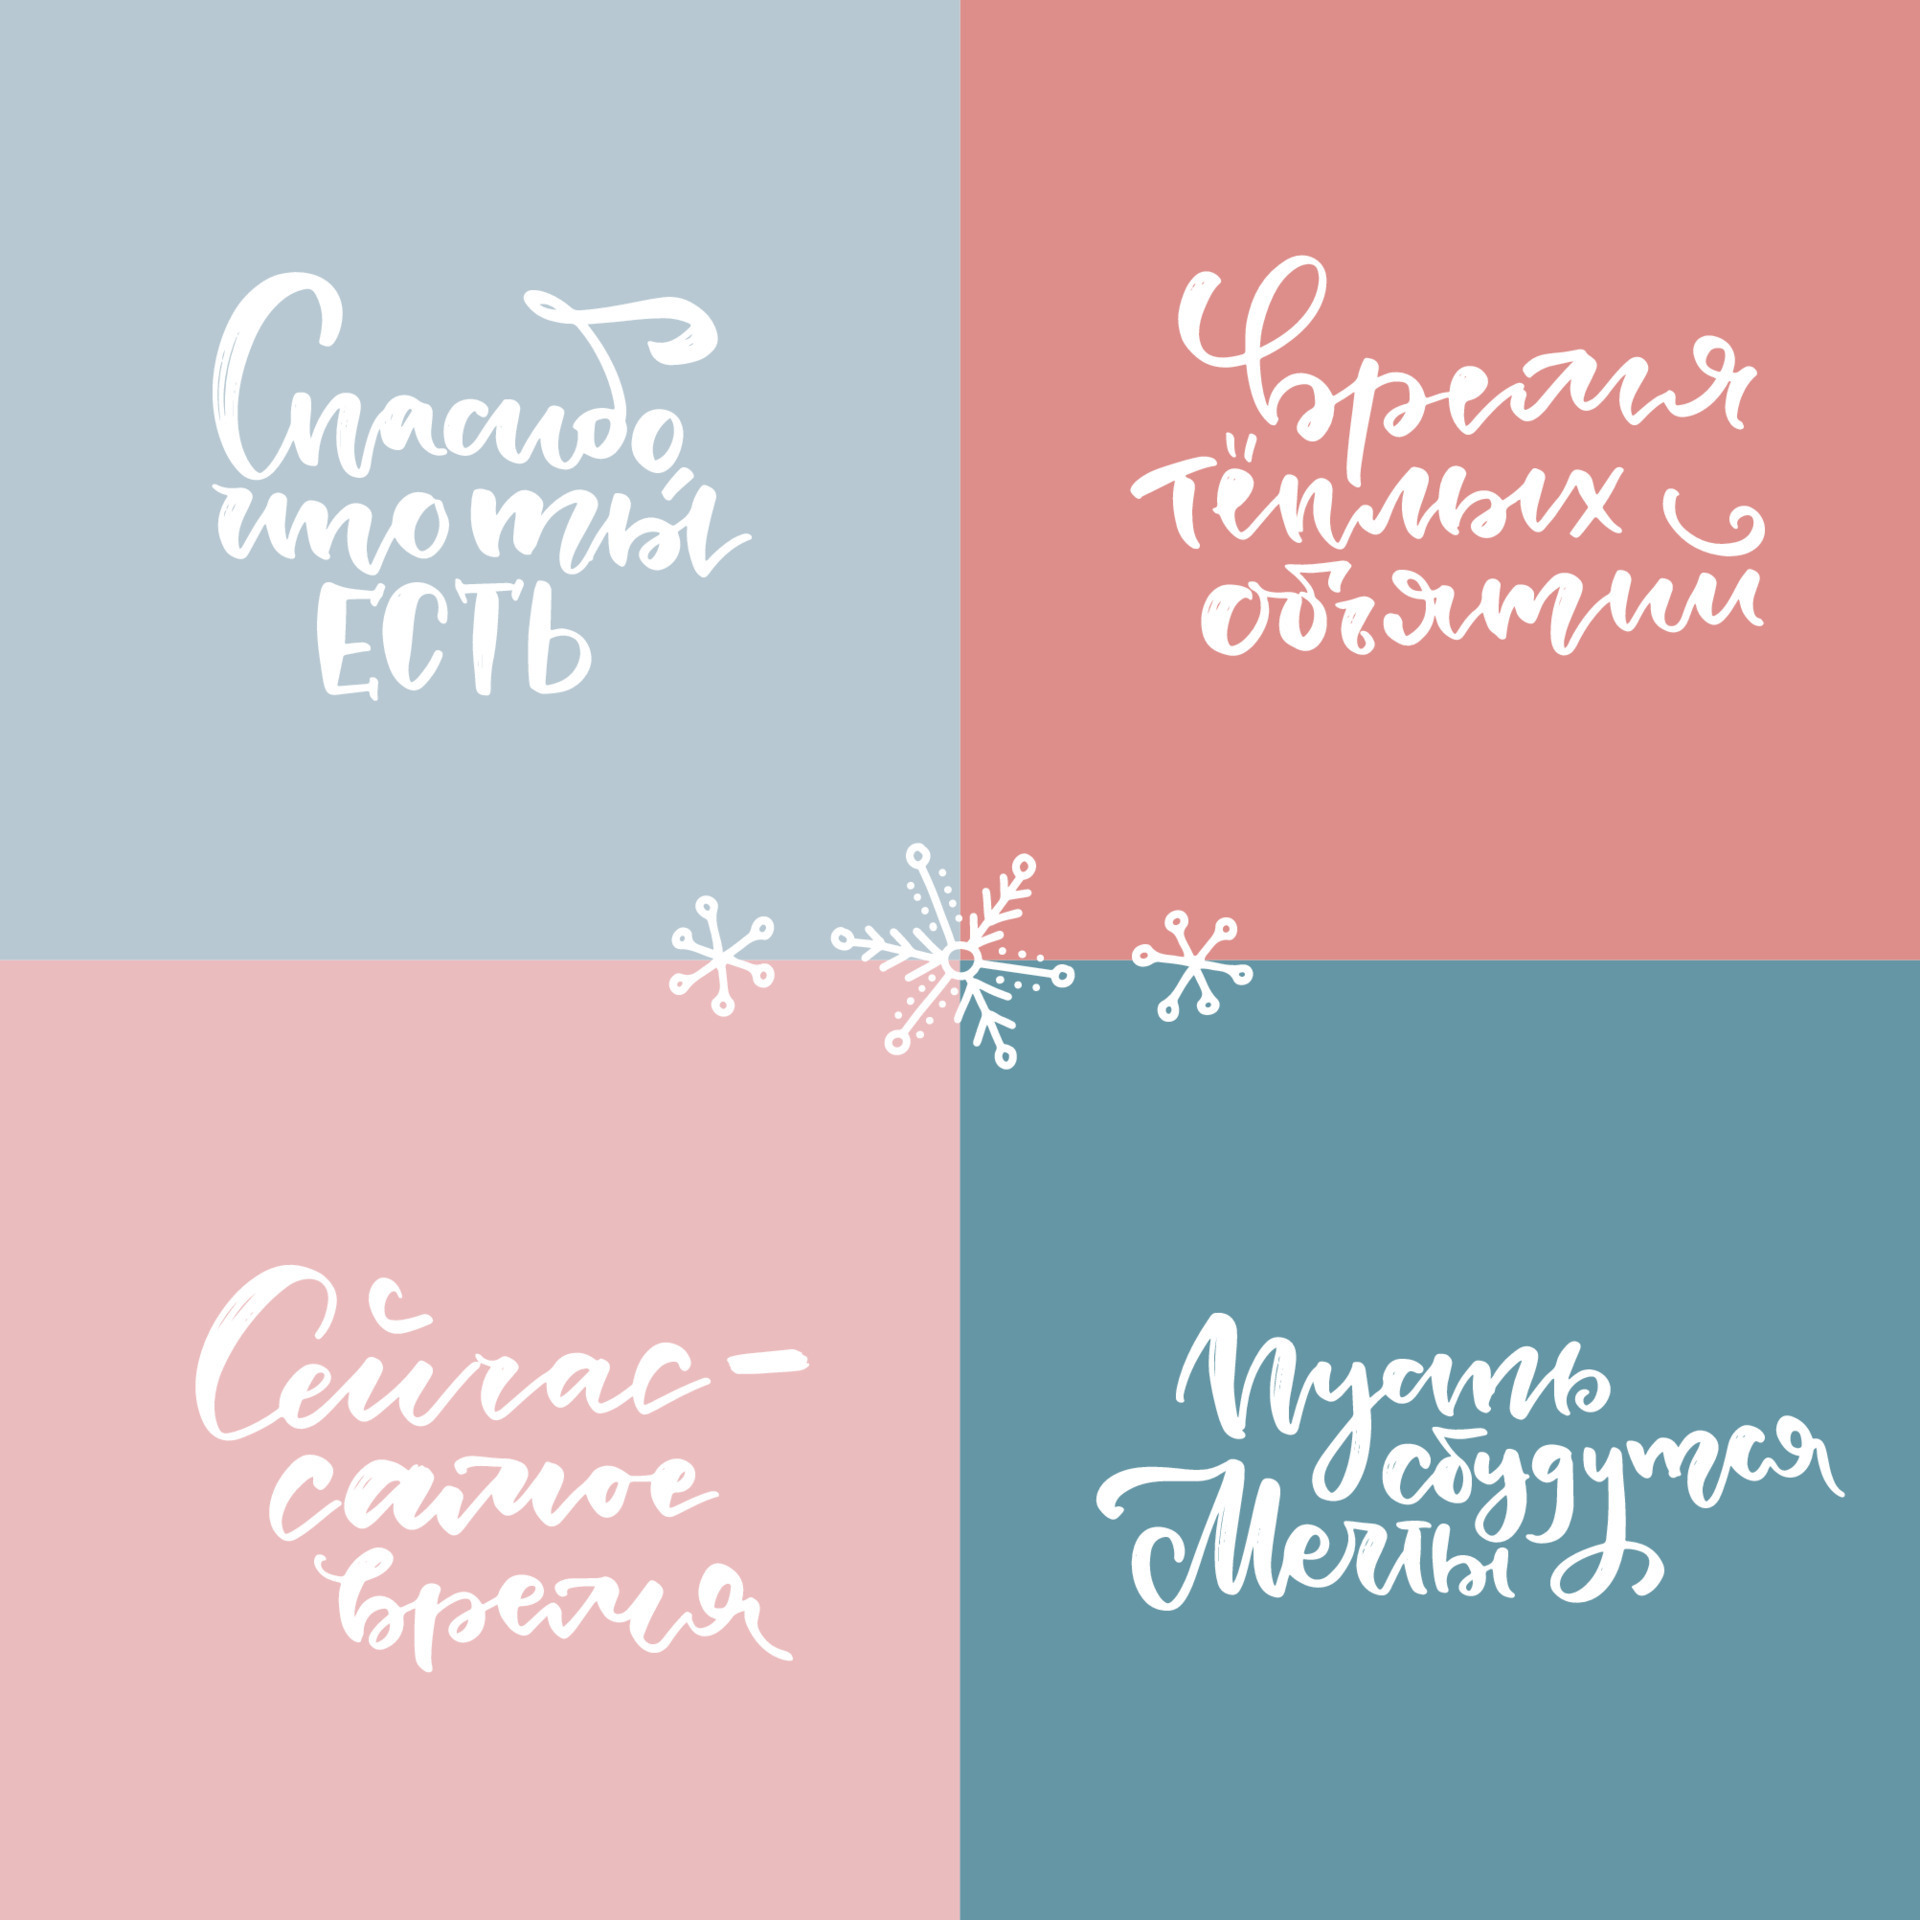 Woud groep Dollar sjabloon Russisch belettering reeks met vrolijk kerstmis, nieuw jaar  hartelijk groeten, wensen, inspirerend zinnen. vertaling - dank u voor  wezen jij, nu is de tijd, laat dromen komen WAAR, tijd voor warm